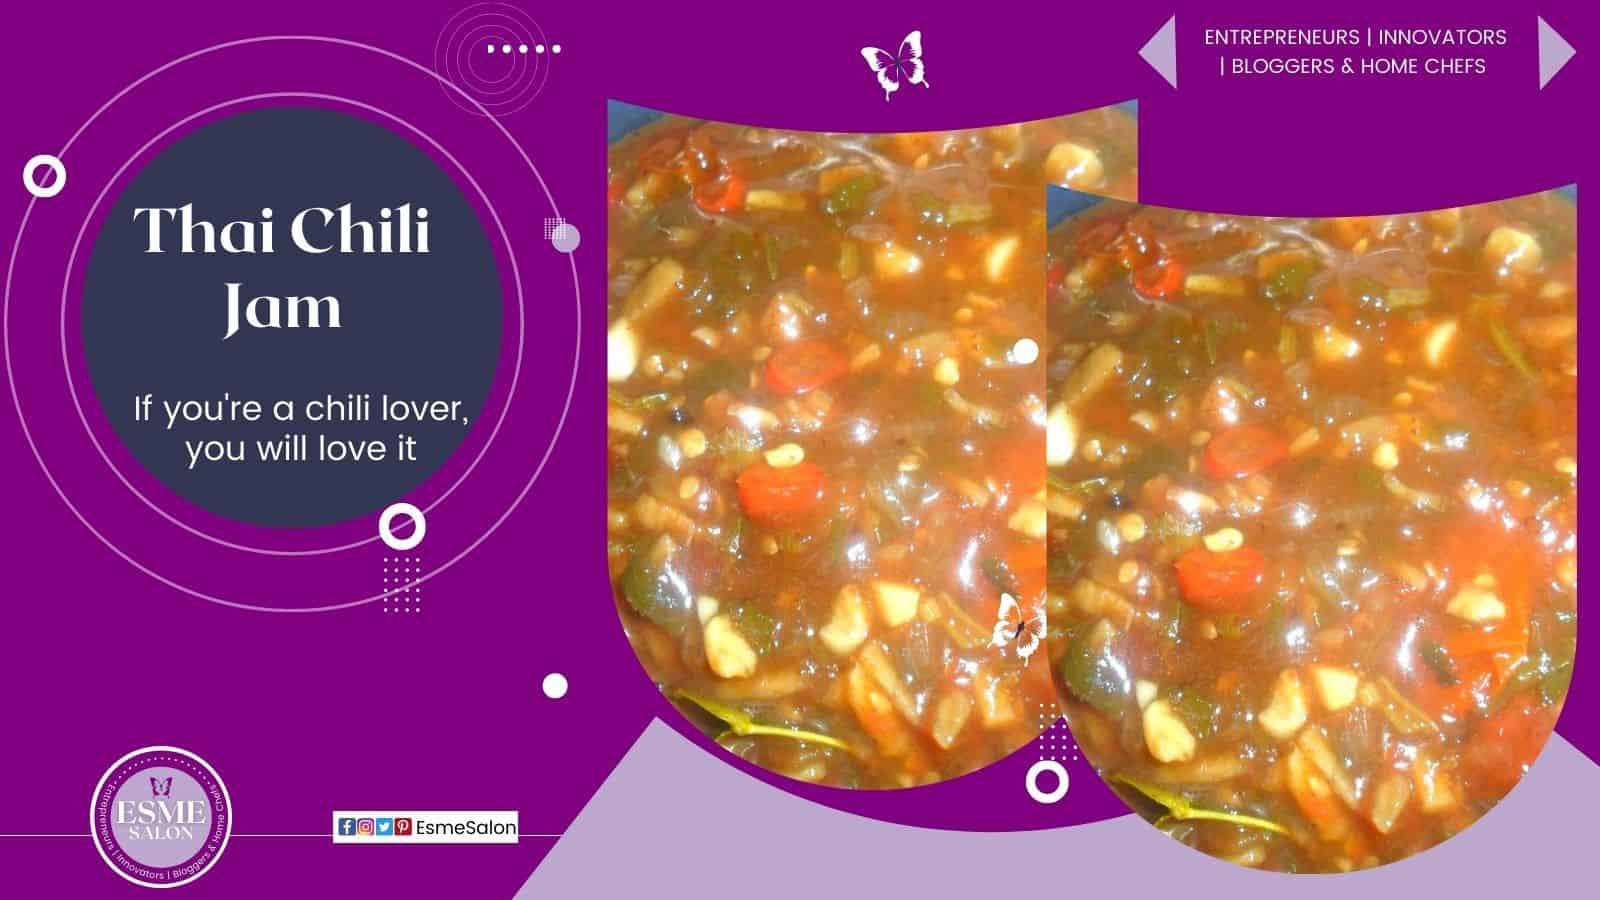 Thai Chili Jam for chili lovers